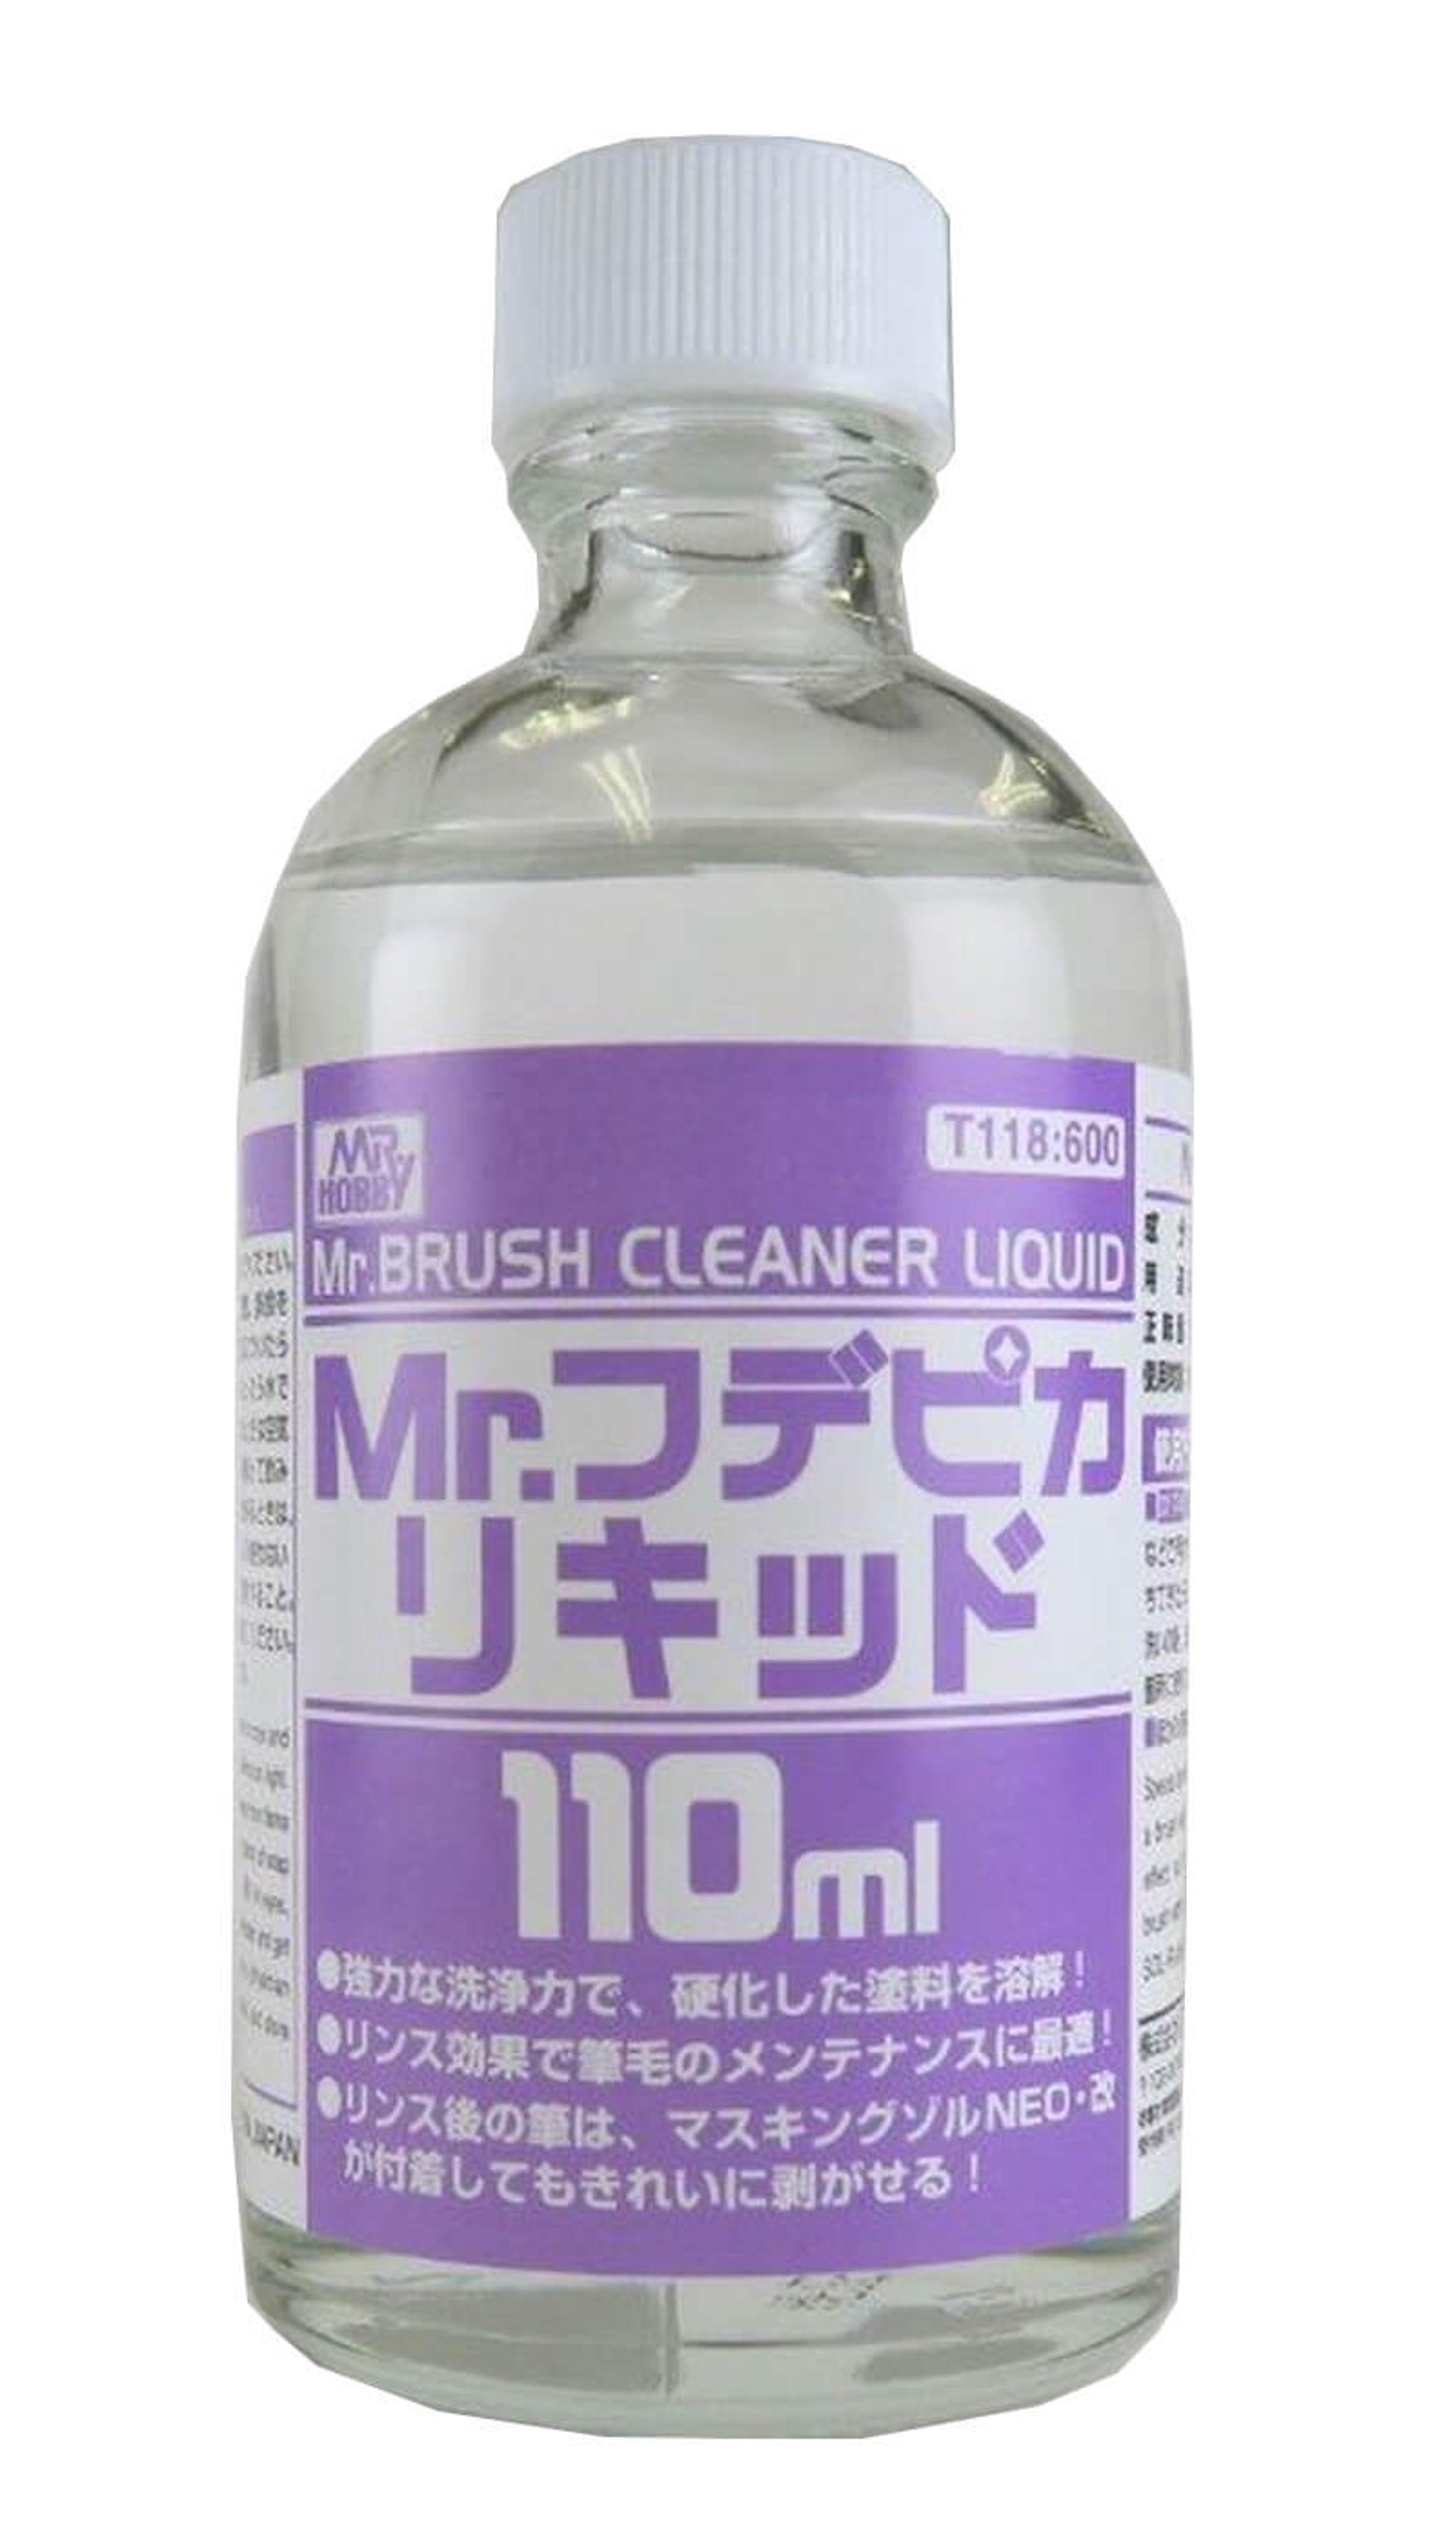 Mr. Brush Cleaner Liquid